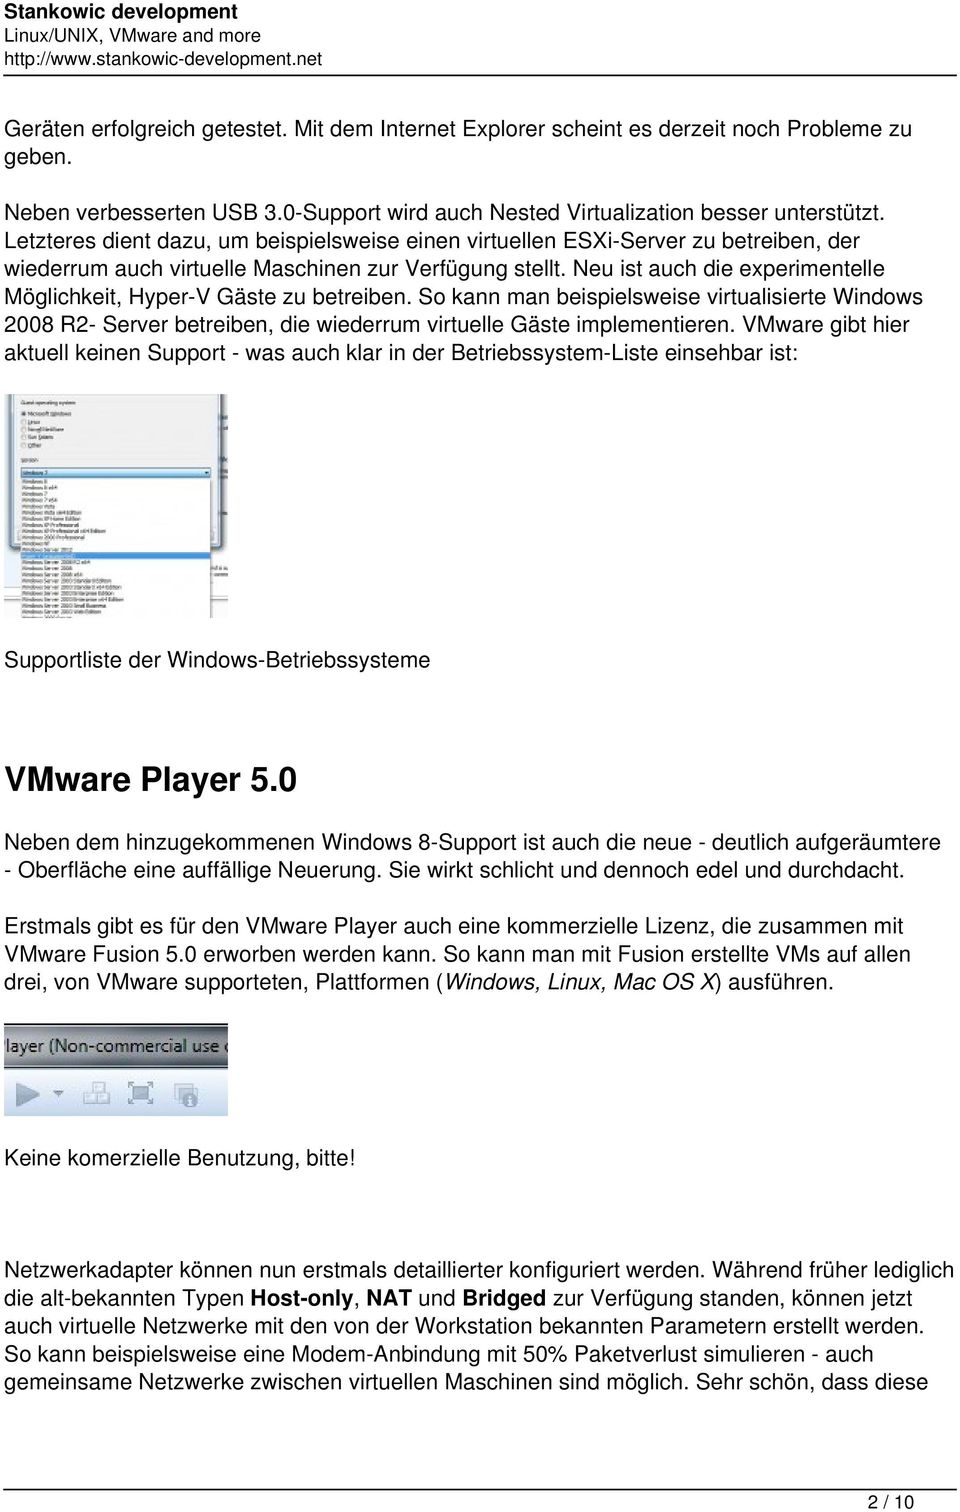 Neu ist auch die experimentelle Möglichkeit, Hyper-V Gäste zu betreiben. So kann man beispielsweise virtualisierte Windows 2008 R2- Server betreiben, die wiederrum virtuelle Gäste implementieren.